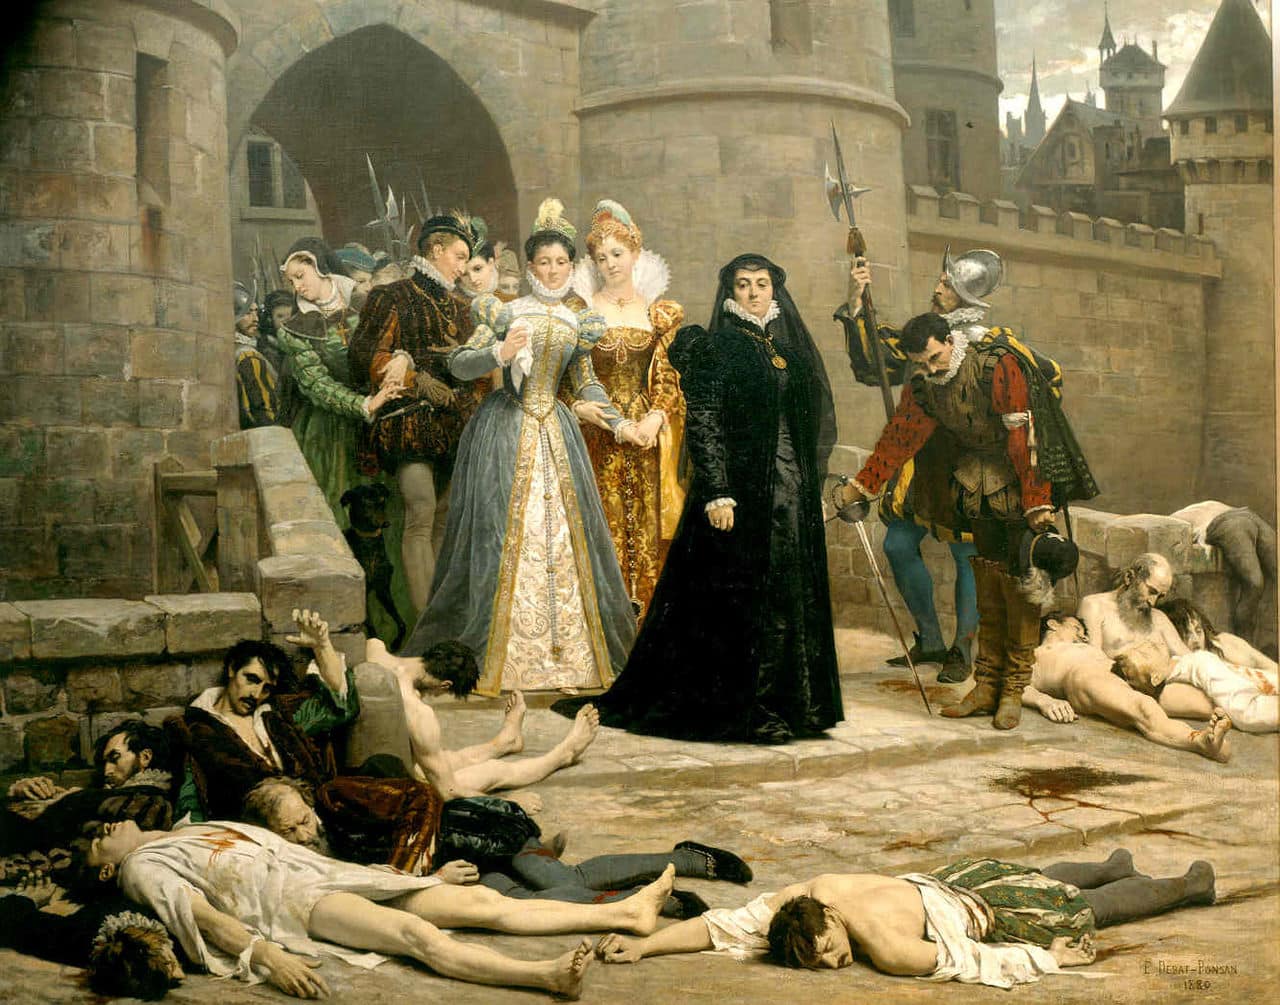 omo foi a Noite de São Bartolomeu, que massacrou milhares em Paris?